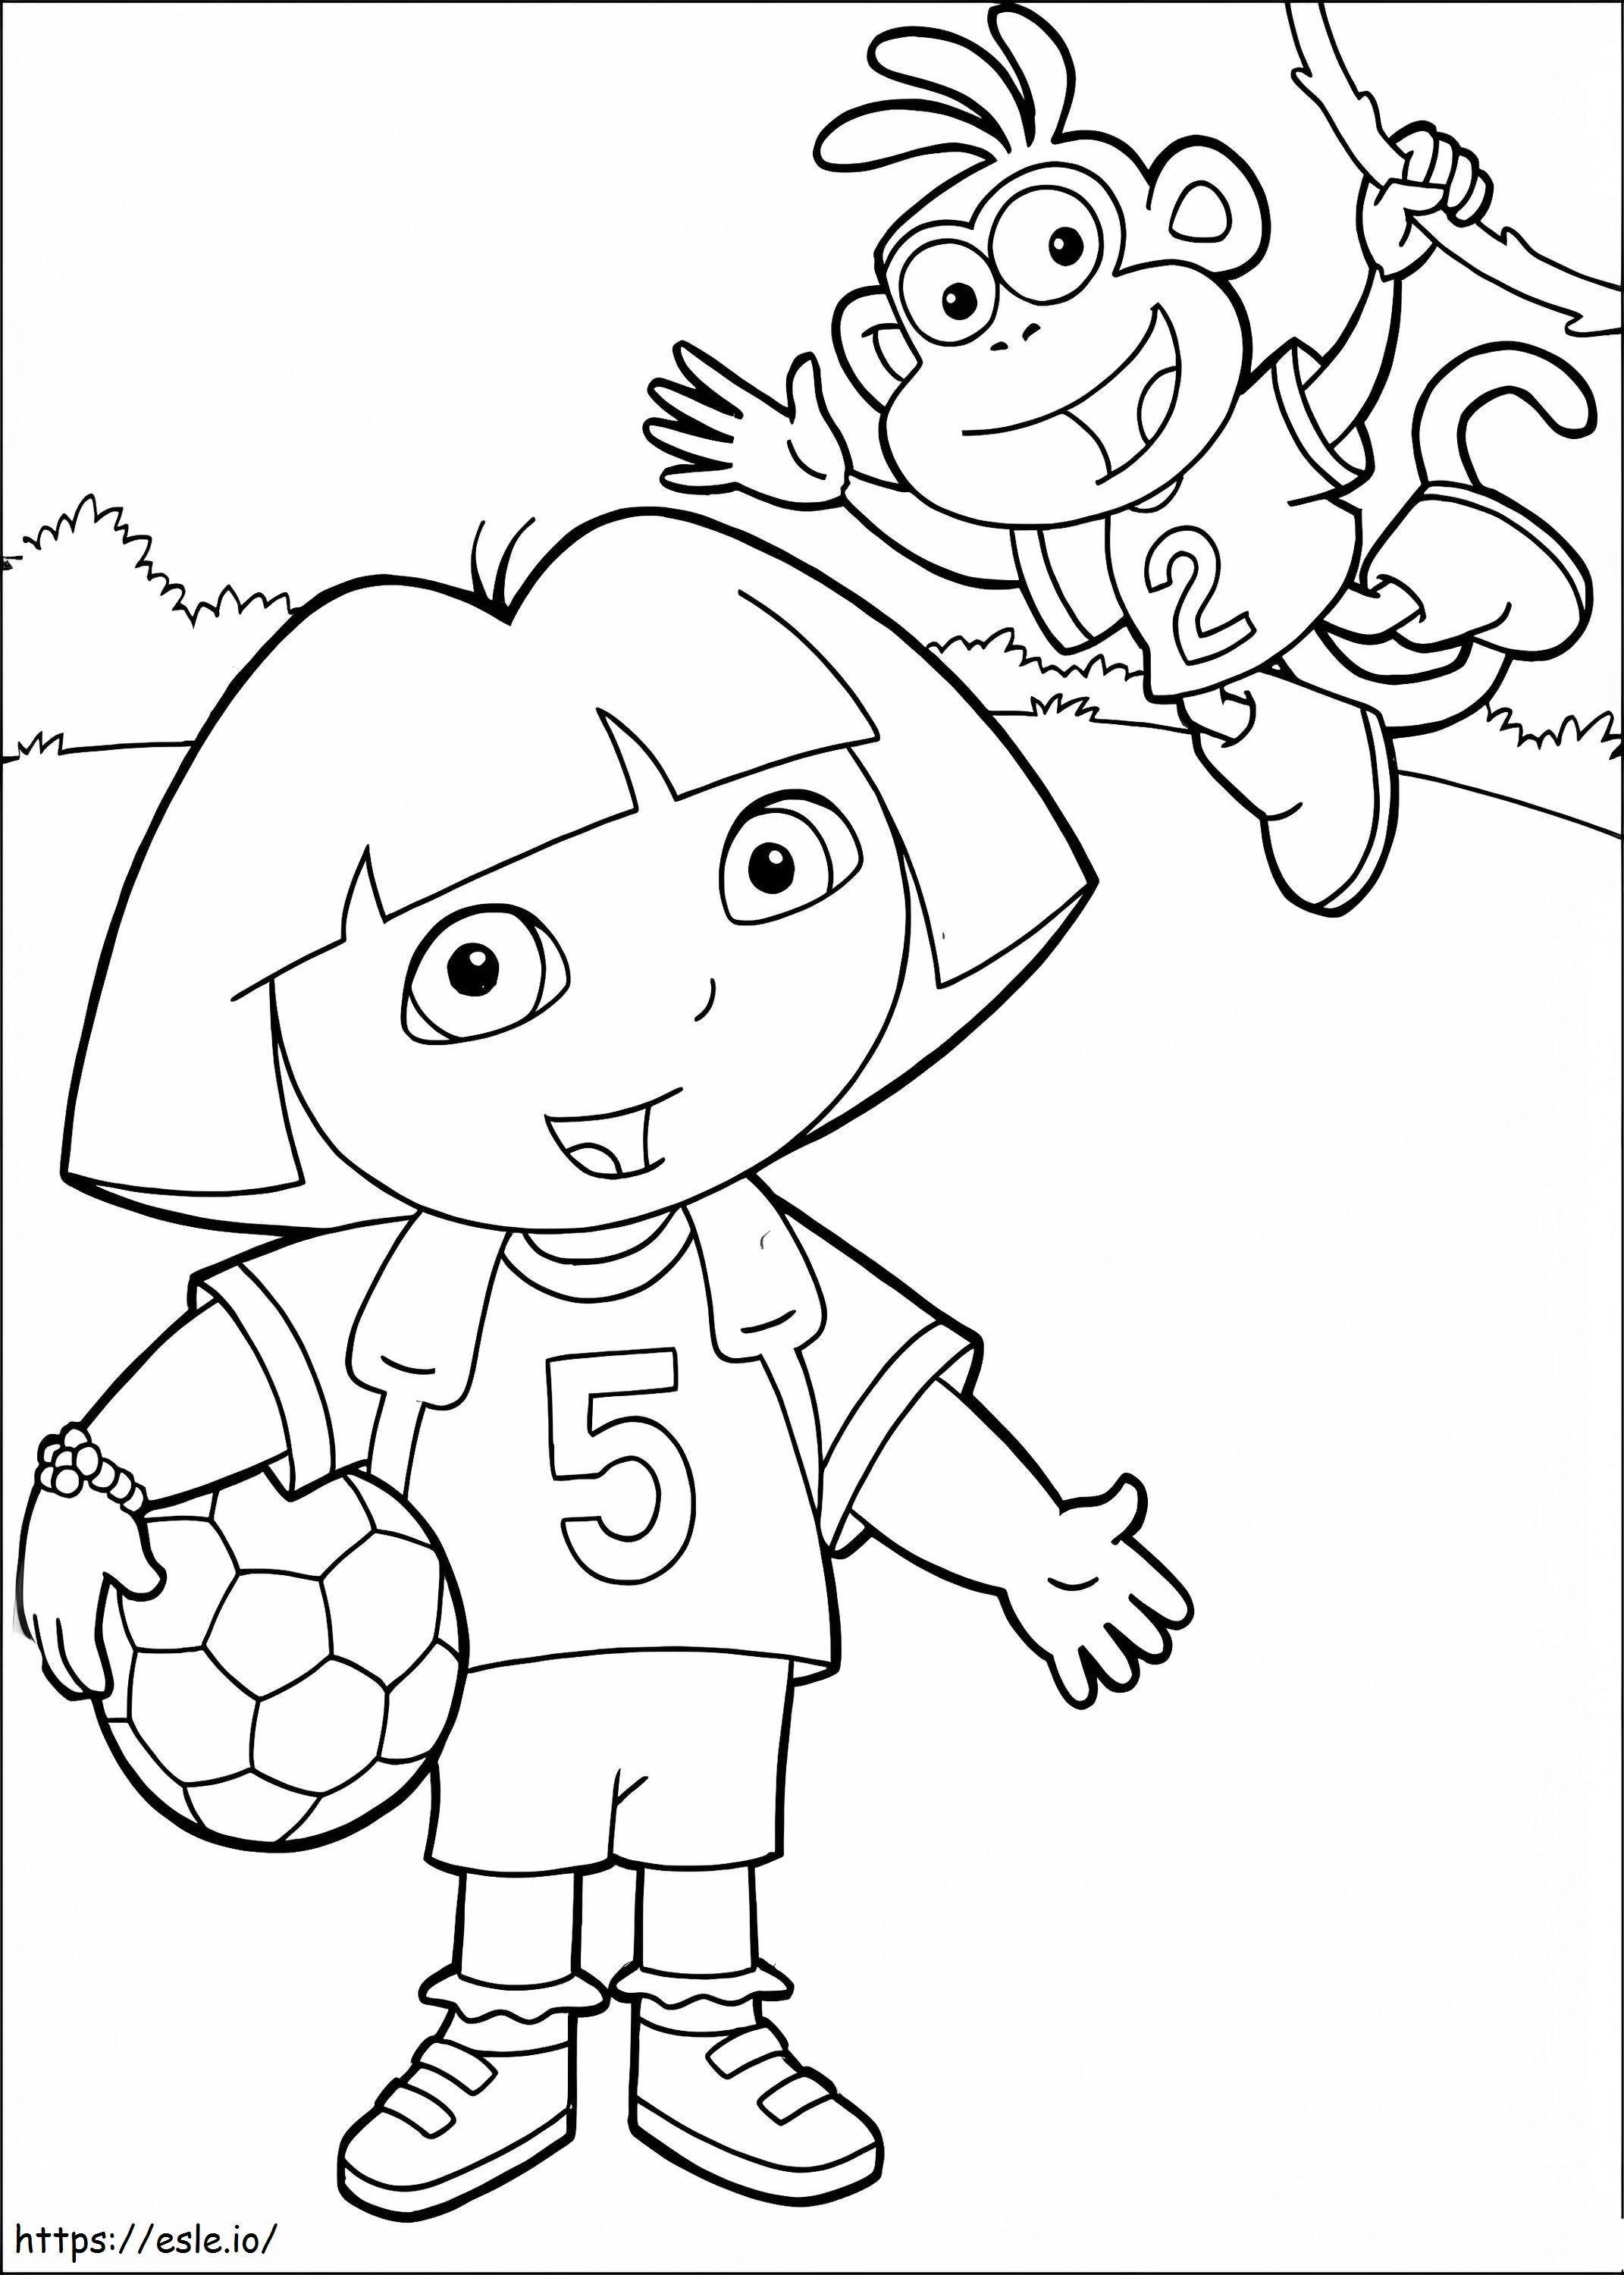 Botas e Dora jogando futebol para colorir